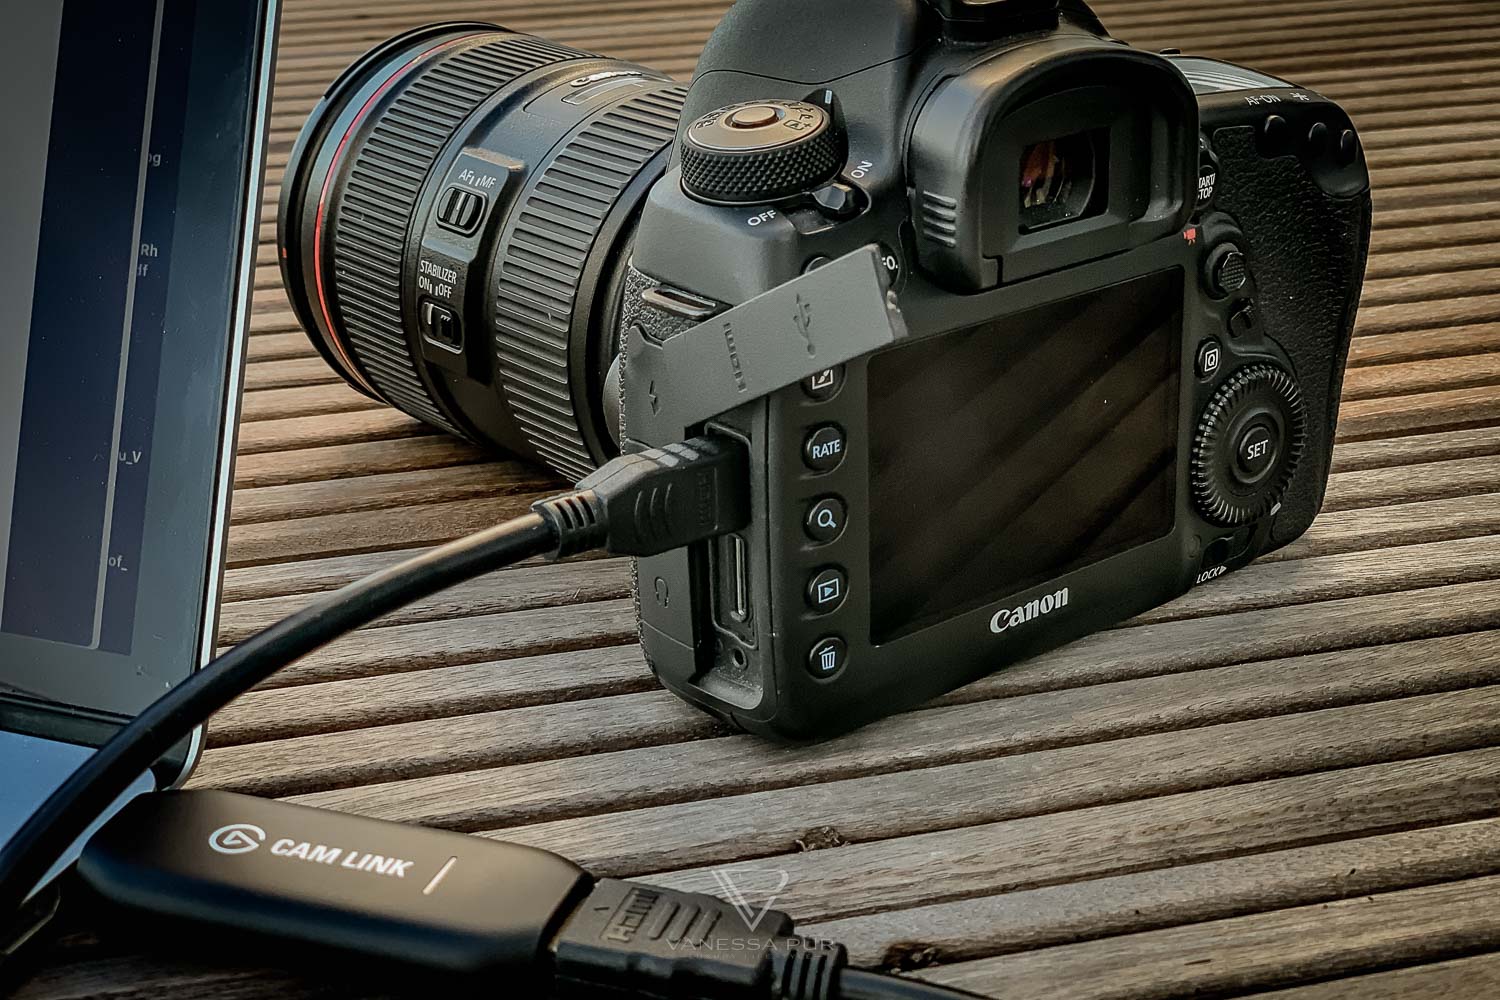 Elgato Cam Link - Kamera an Laptop oder PC für Streaming, Gaming anschließen - Elgato Cam Link USB Stick - Streaming Lösung für Twitch und YouTube mit DSLR Kamera - Videostreaming leicht gemacht - Bewertung